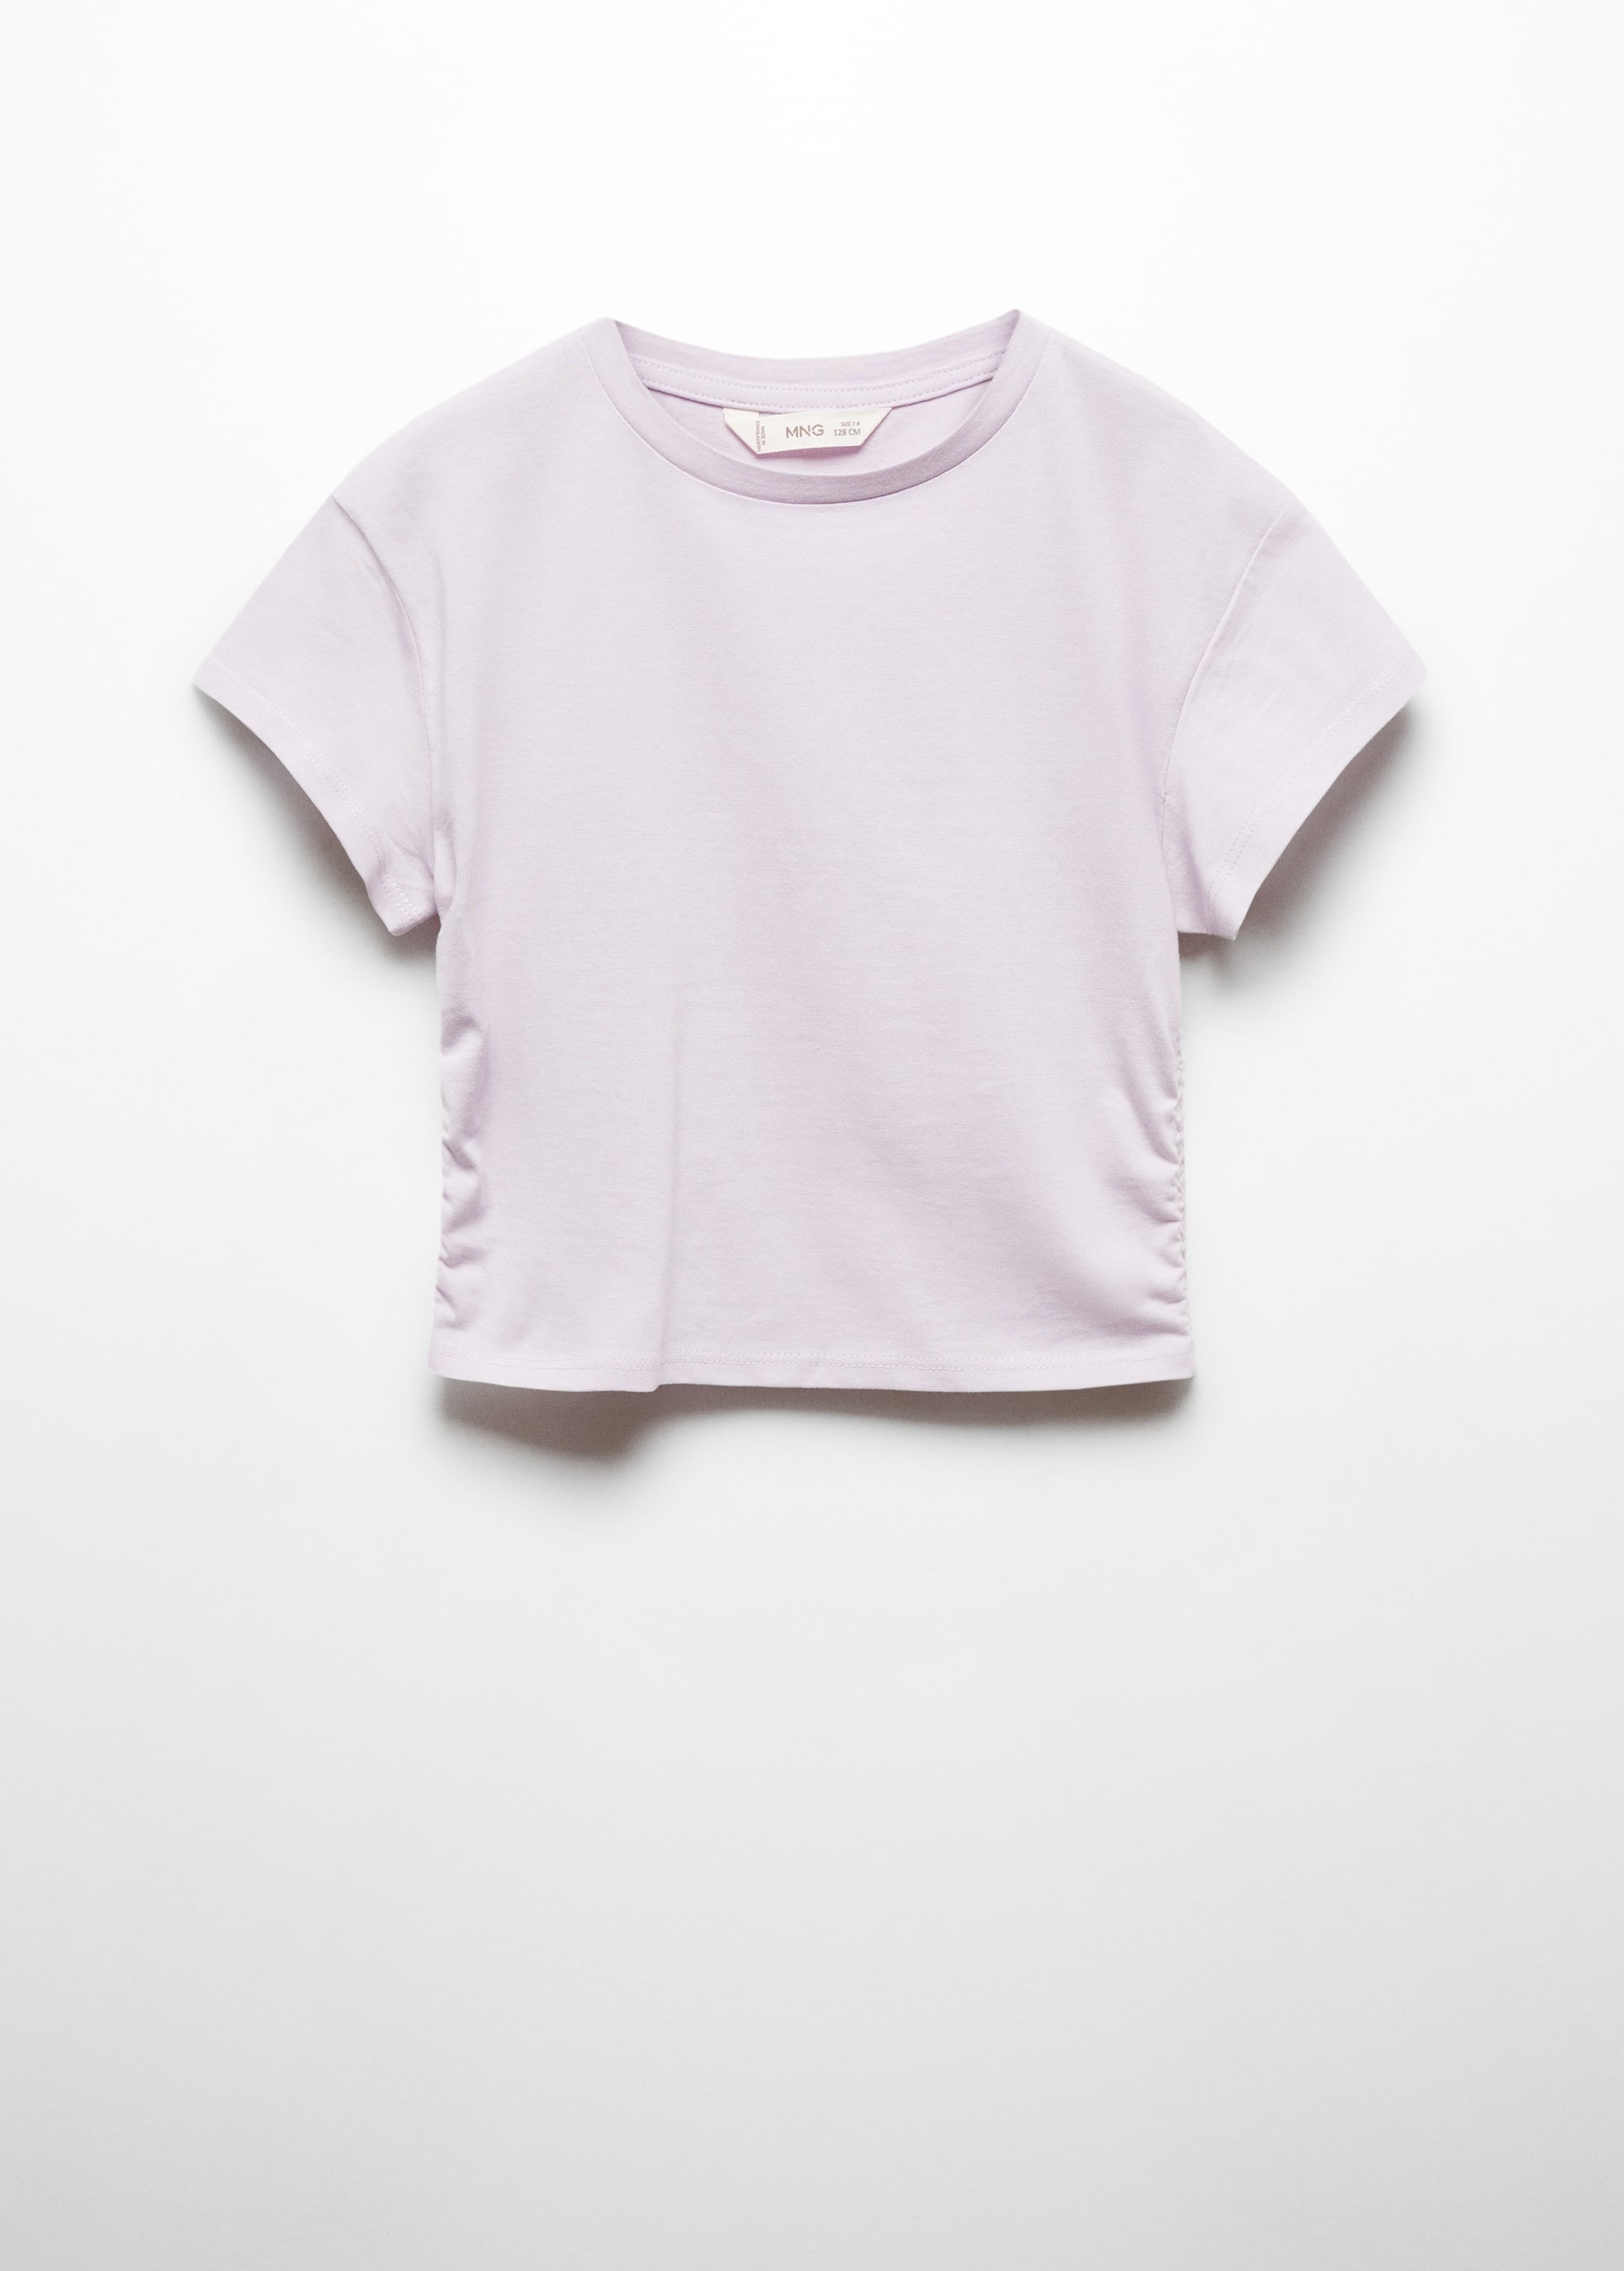 Camiseta algodón detalle fruncido - Artículo sin modelo